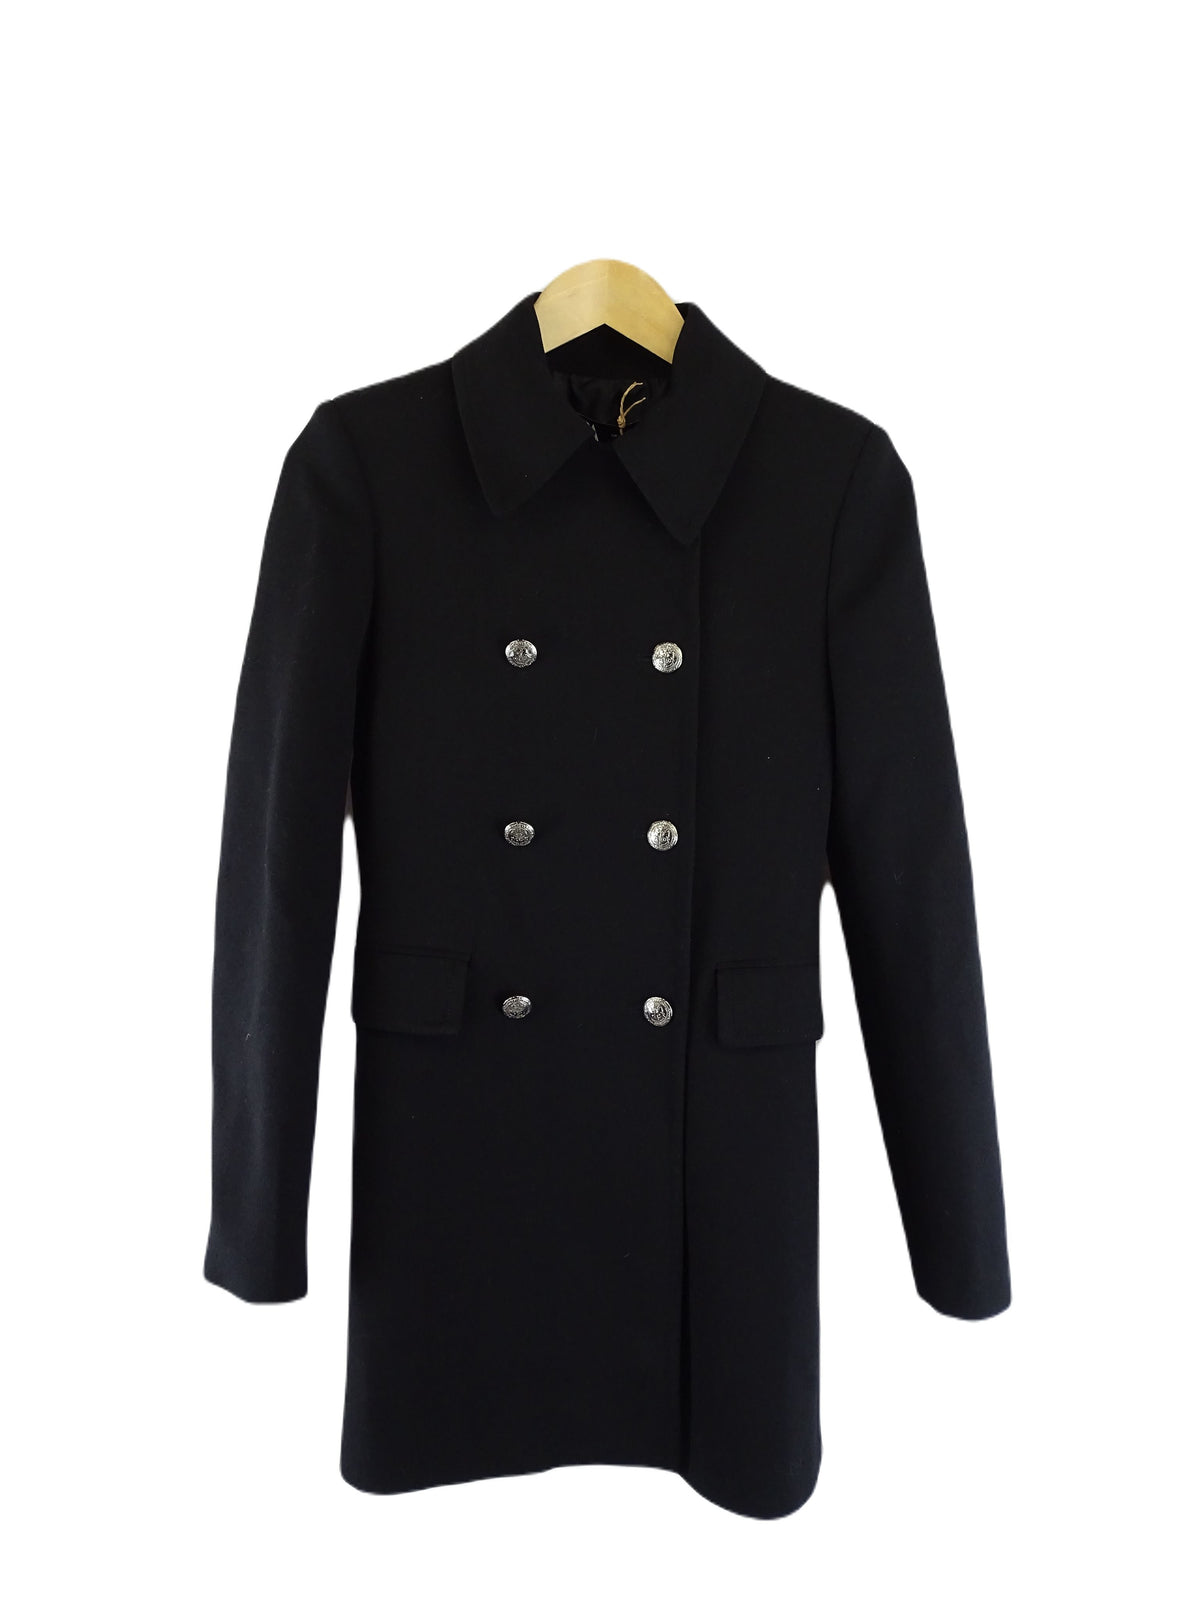 Zara Black Coat XS